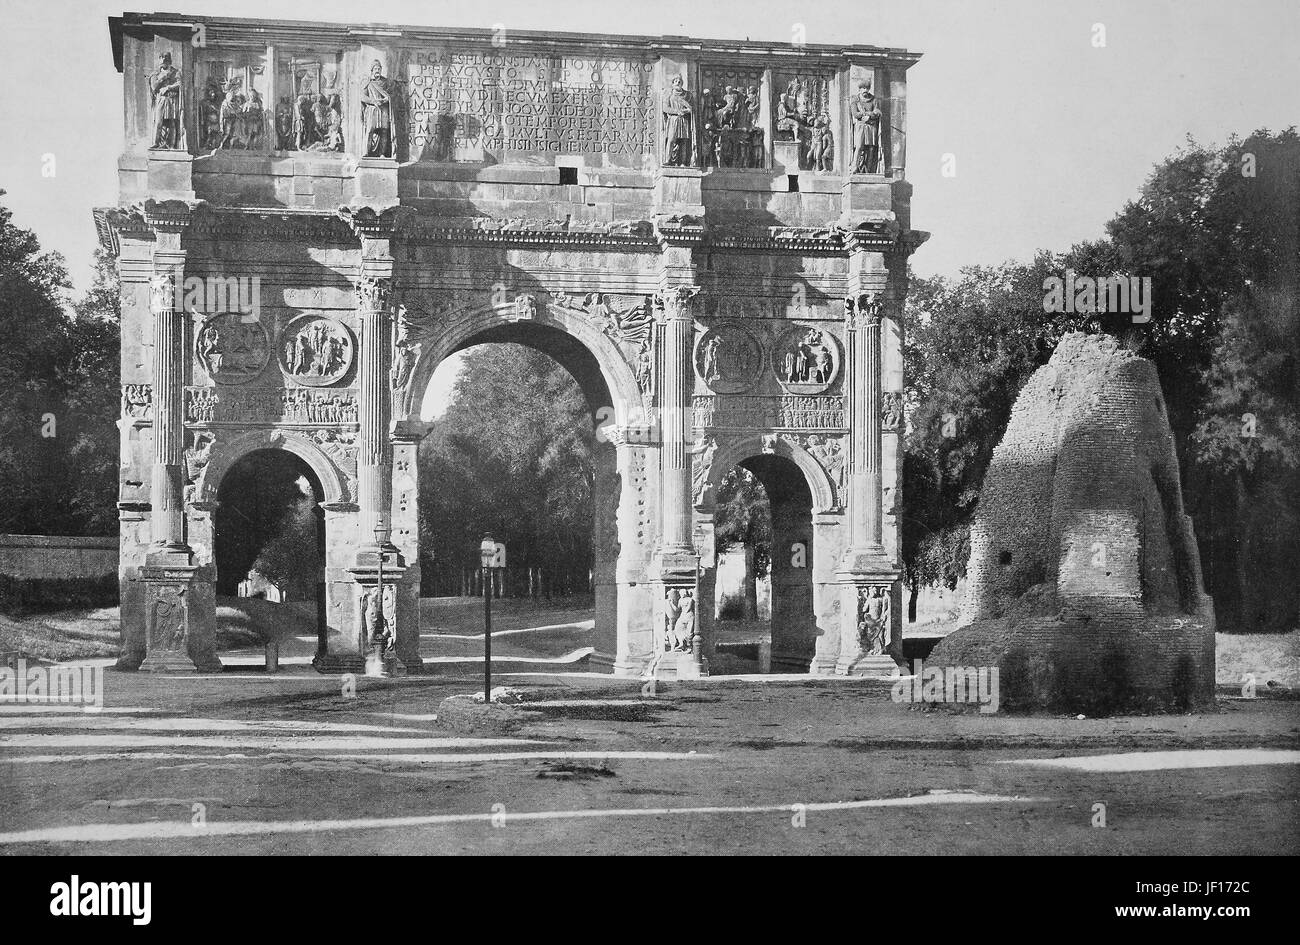 Historisches Foto der Triumphbogen des Konstantin, Arco di Costantino, ein Triumphbogen in Rom, Italien, verbesserte digitale Reproduktion aus einer Originalgraphik von 1890 Stockfoto